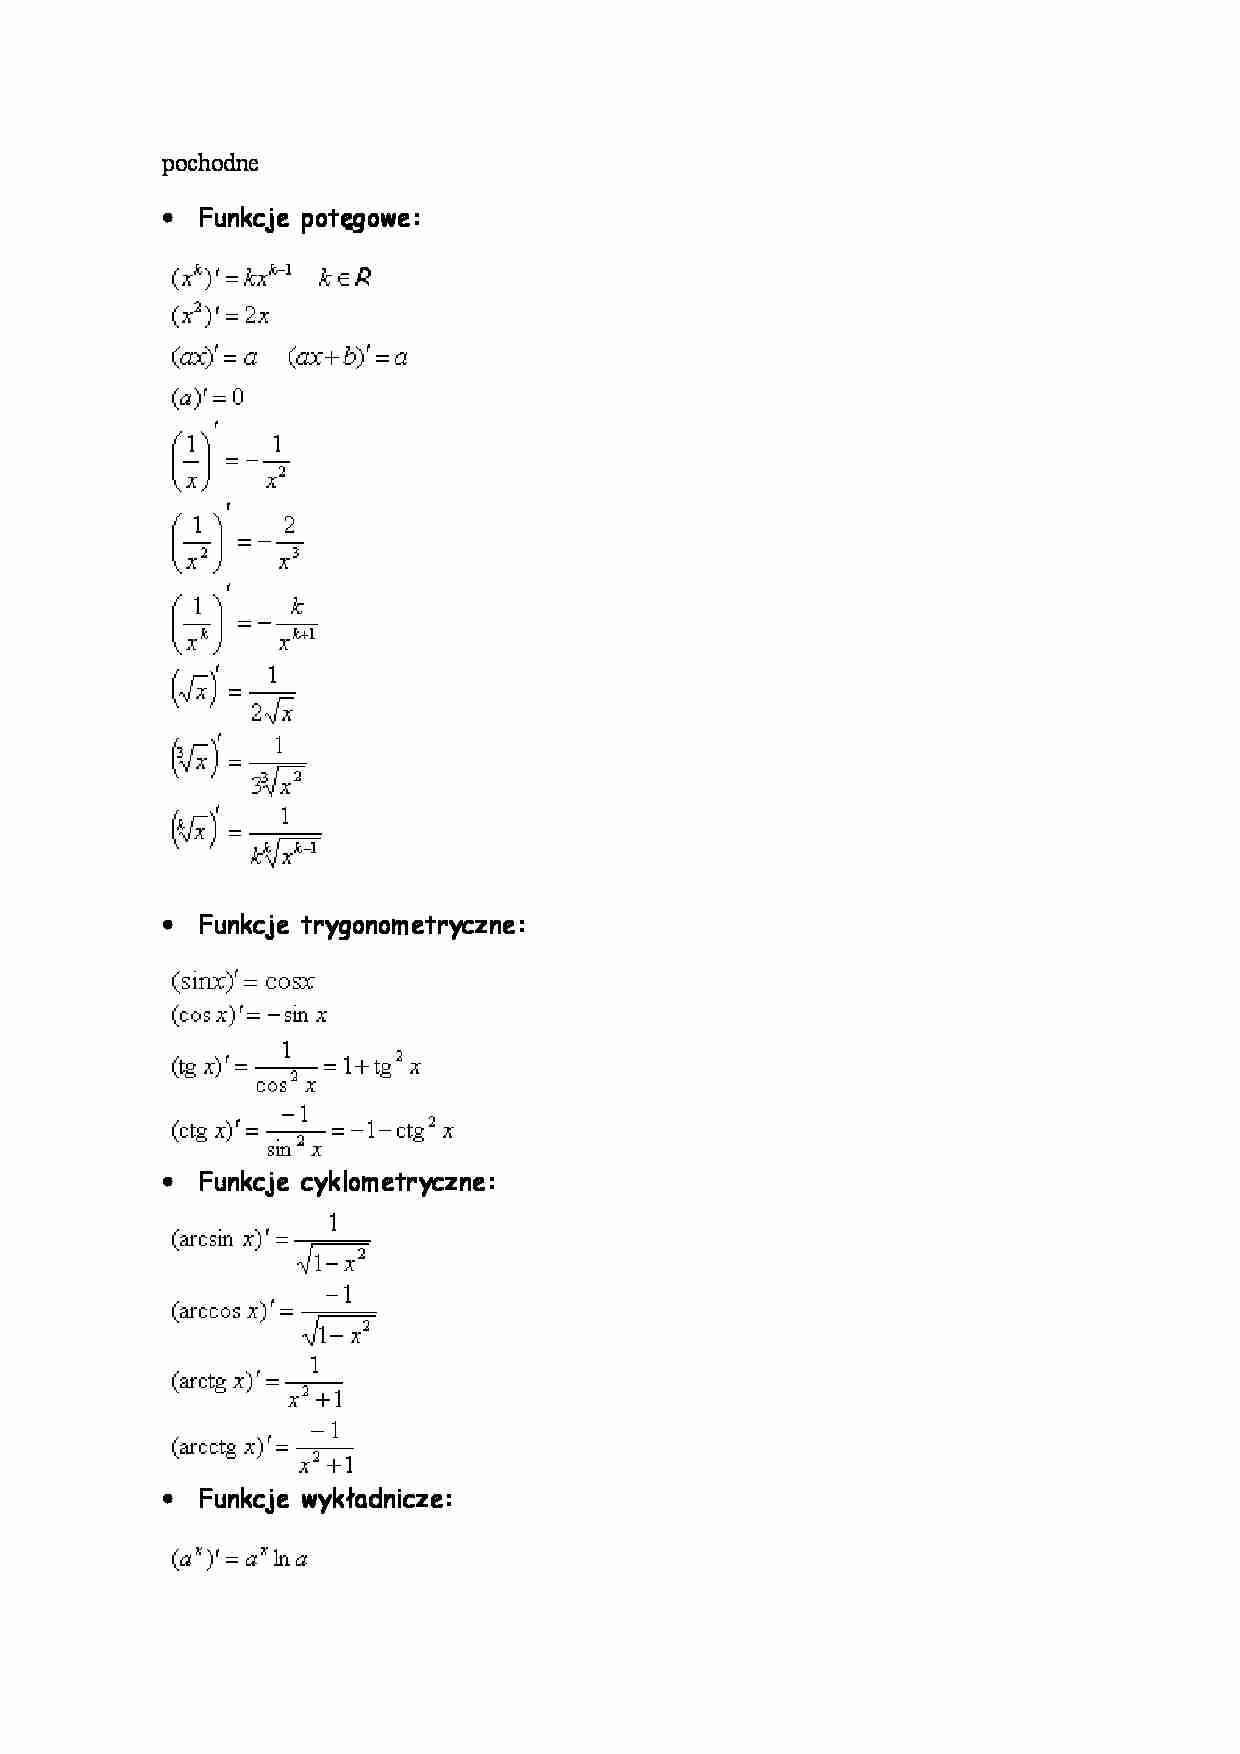 Pochodne - wzory matematyczne - strona 1